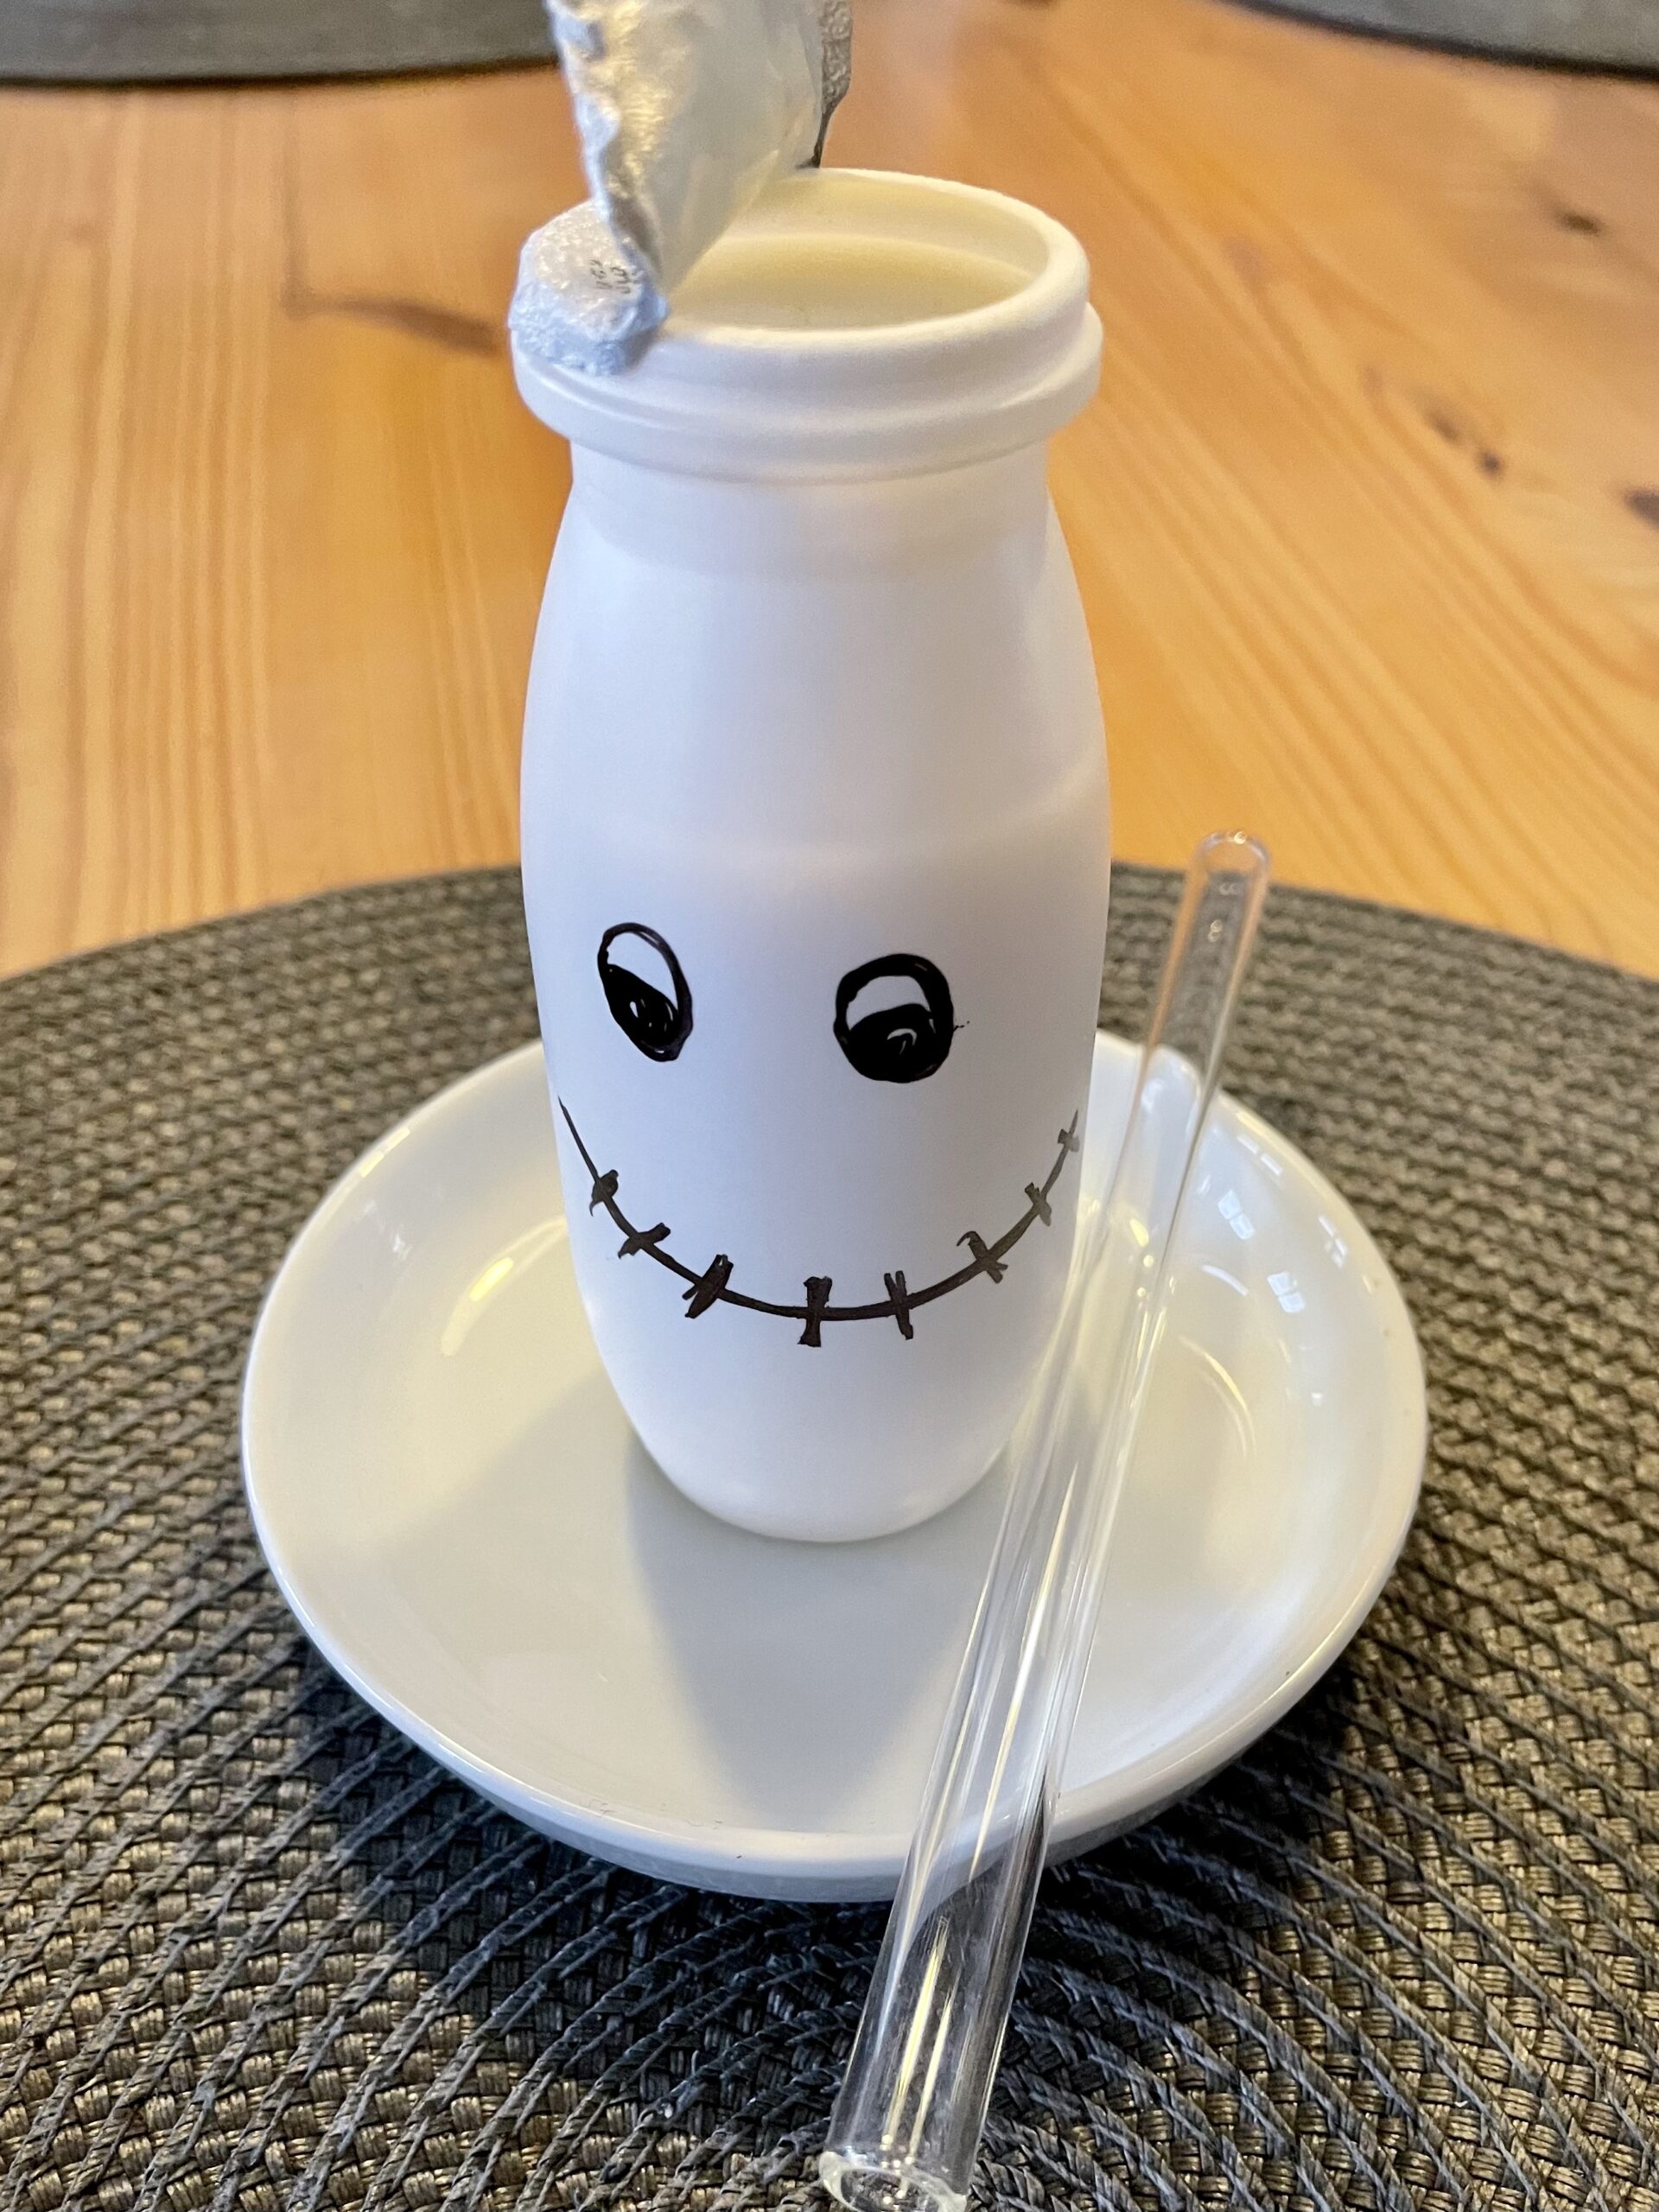 Bild zum Schritt 5 für das Bastel- und DIY-Abenteuer für Kinder: 'Stellt den Trinkjoghurt anschließend auf einen kleinen Teller und legt...'